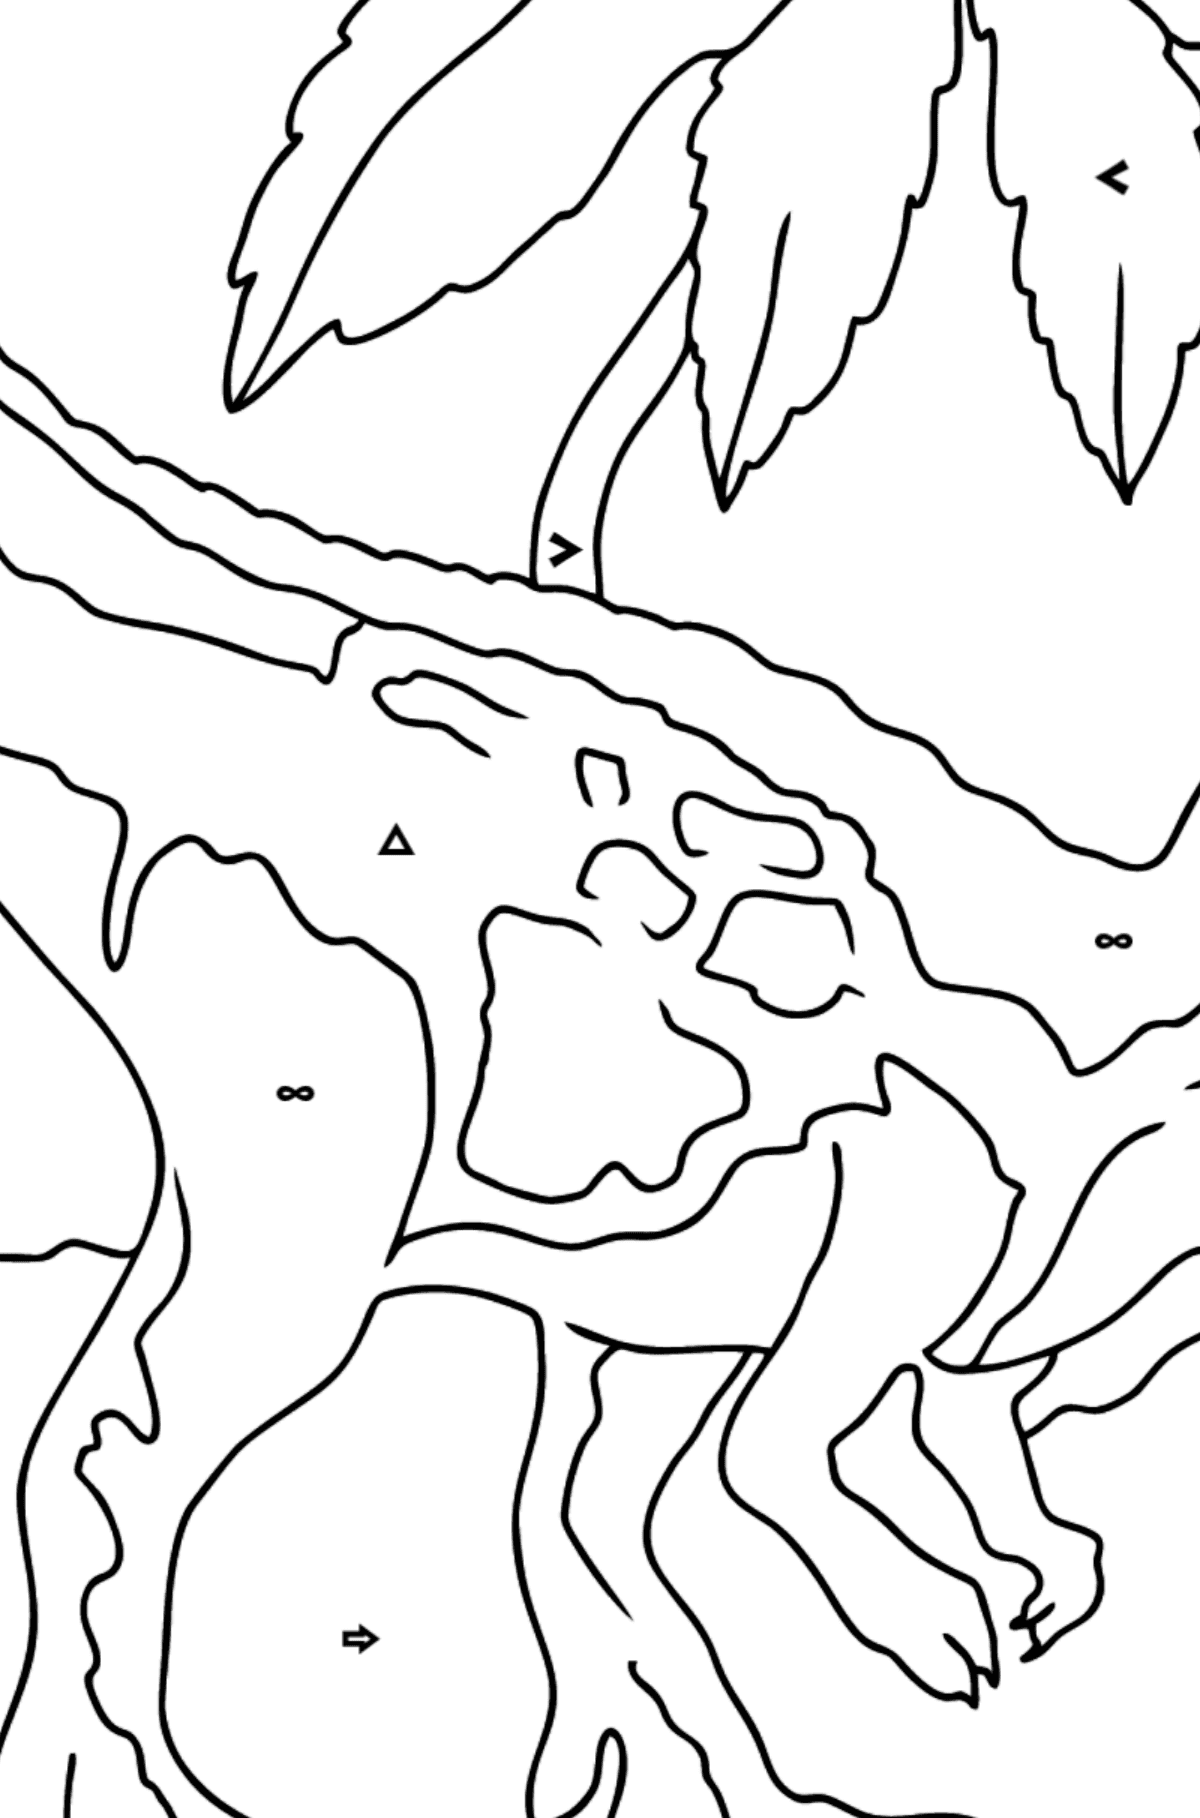 Tegning til fargelegging tyrannosaurus rovdyr (enkelt) - Fargelegge etter symboler og geometriske former for barn